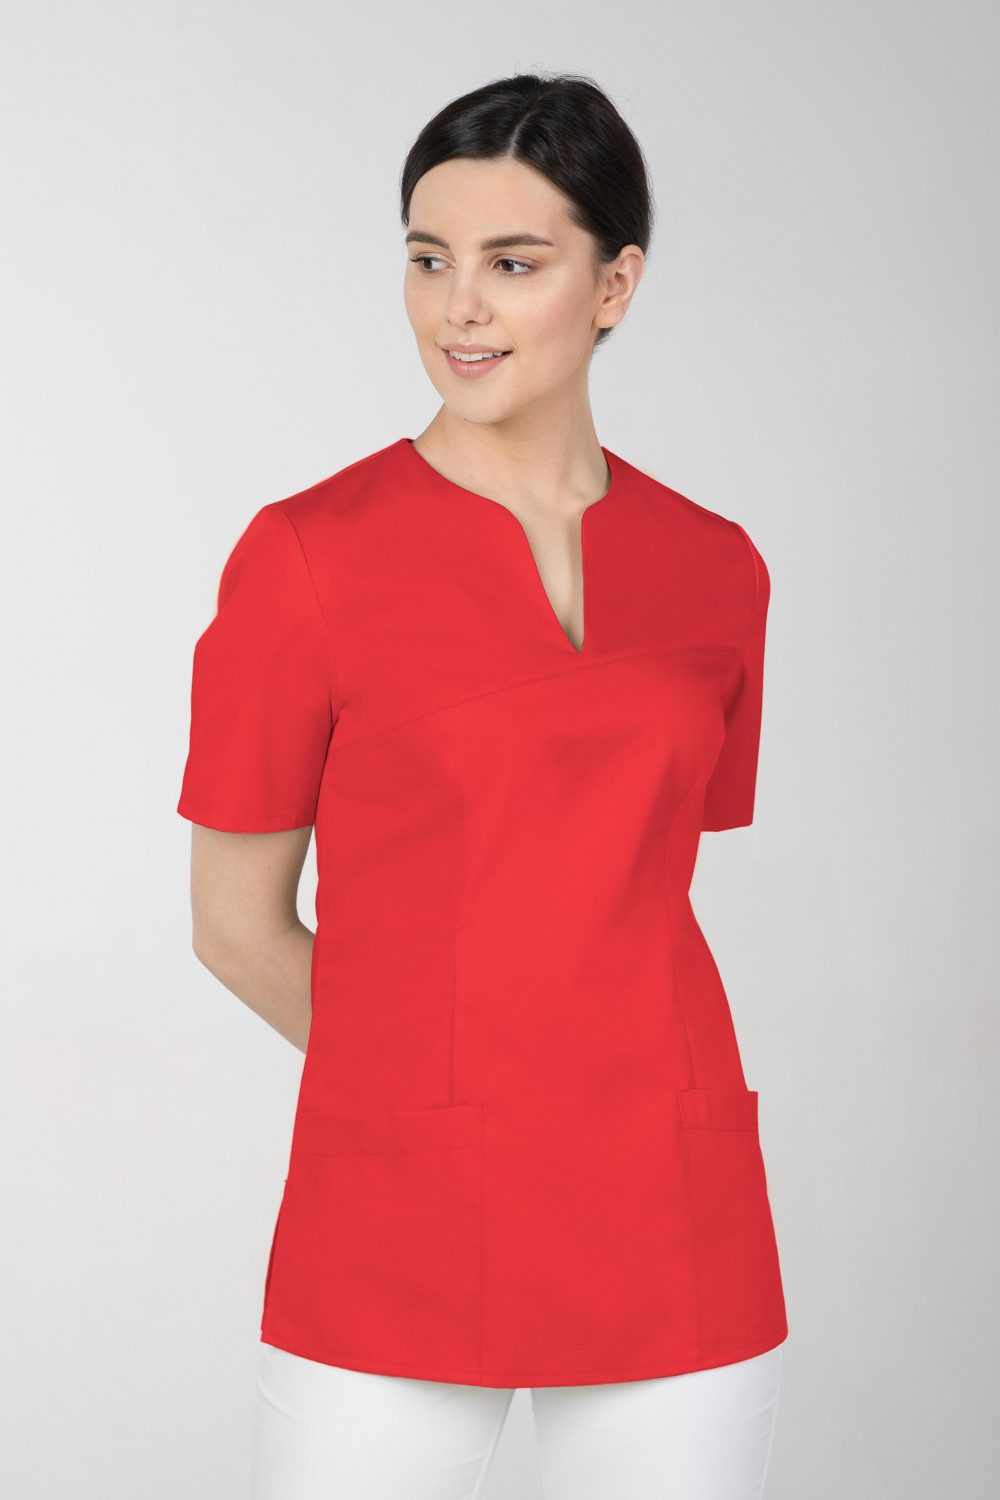 M-323 Bluza medyczna kosmetyczna damska fartuch kolor czerwony